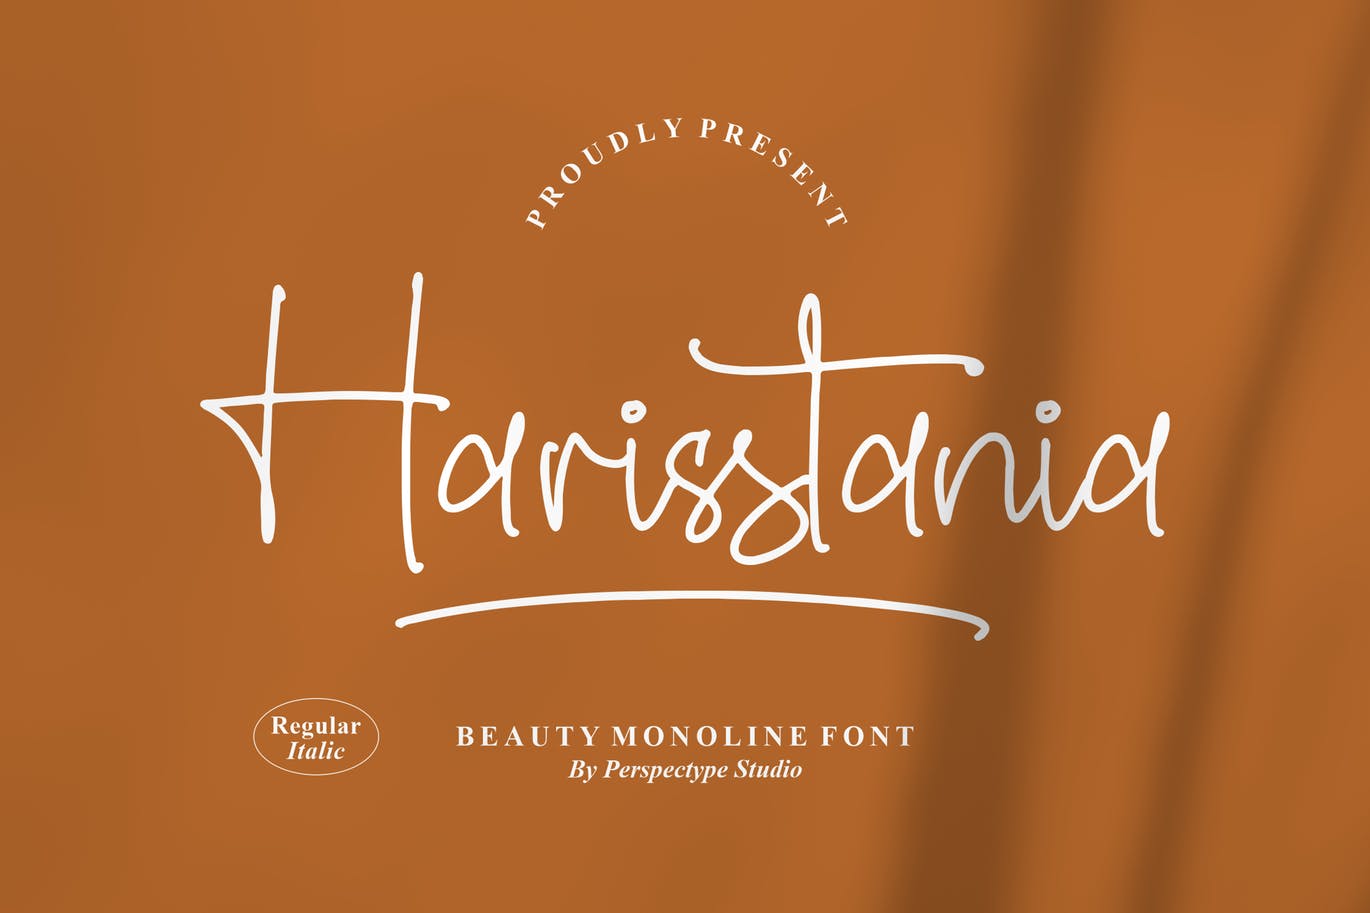 艺术创作单线字体素材 Harisstania Monoline Font 设计素材 第1张